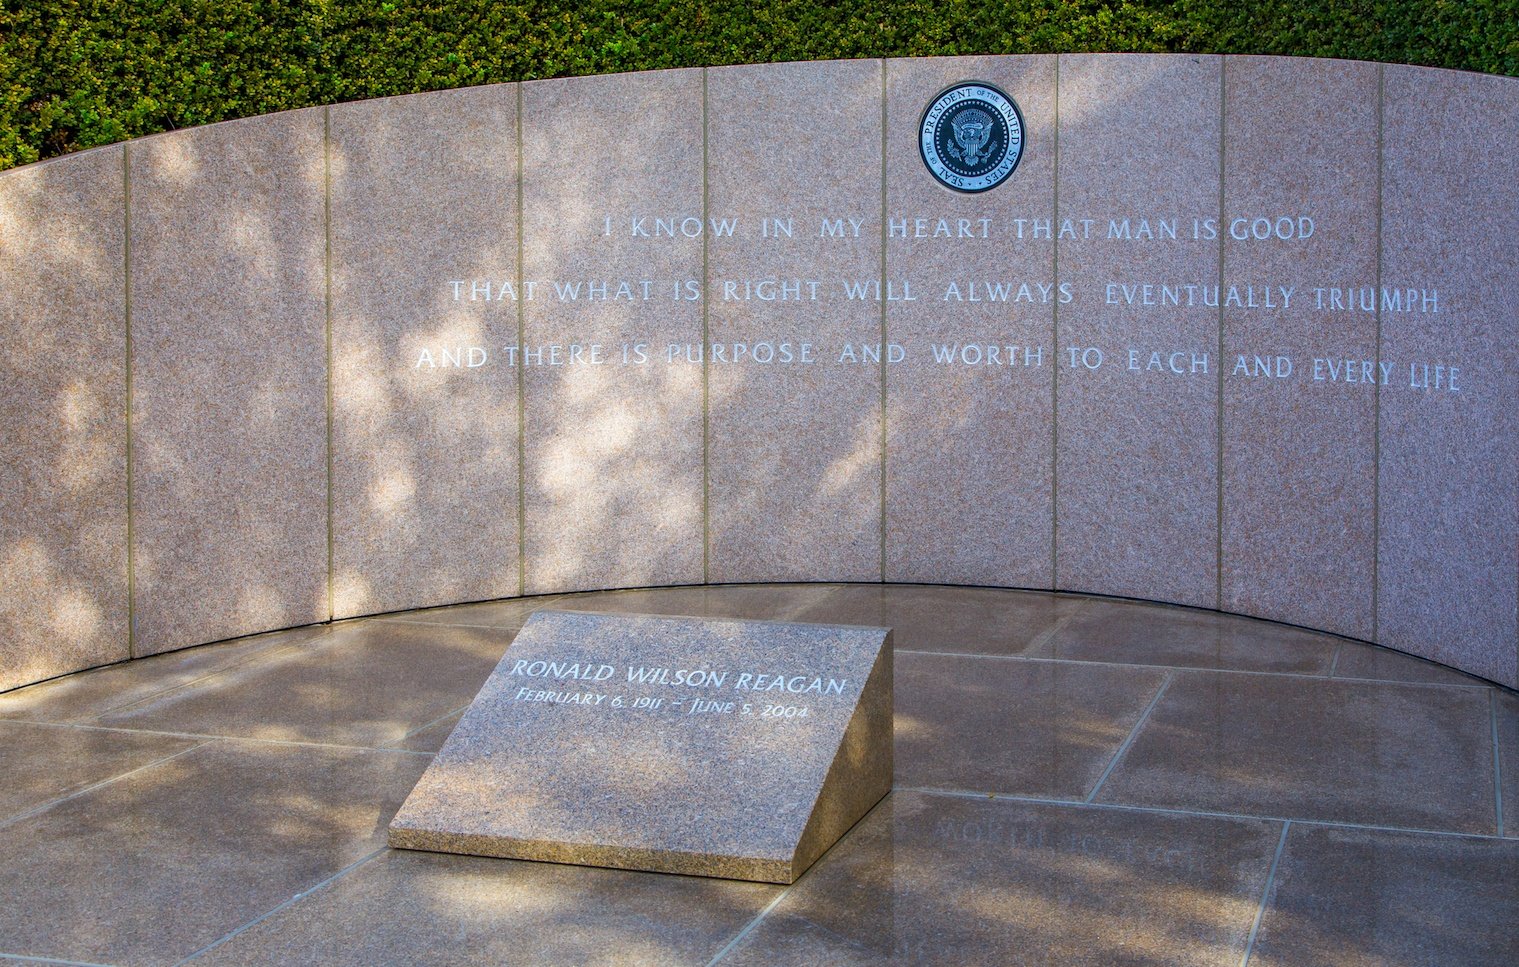 Ronald Reagan Headstone at Reagan Library